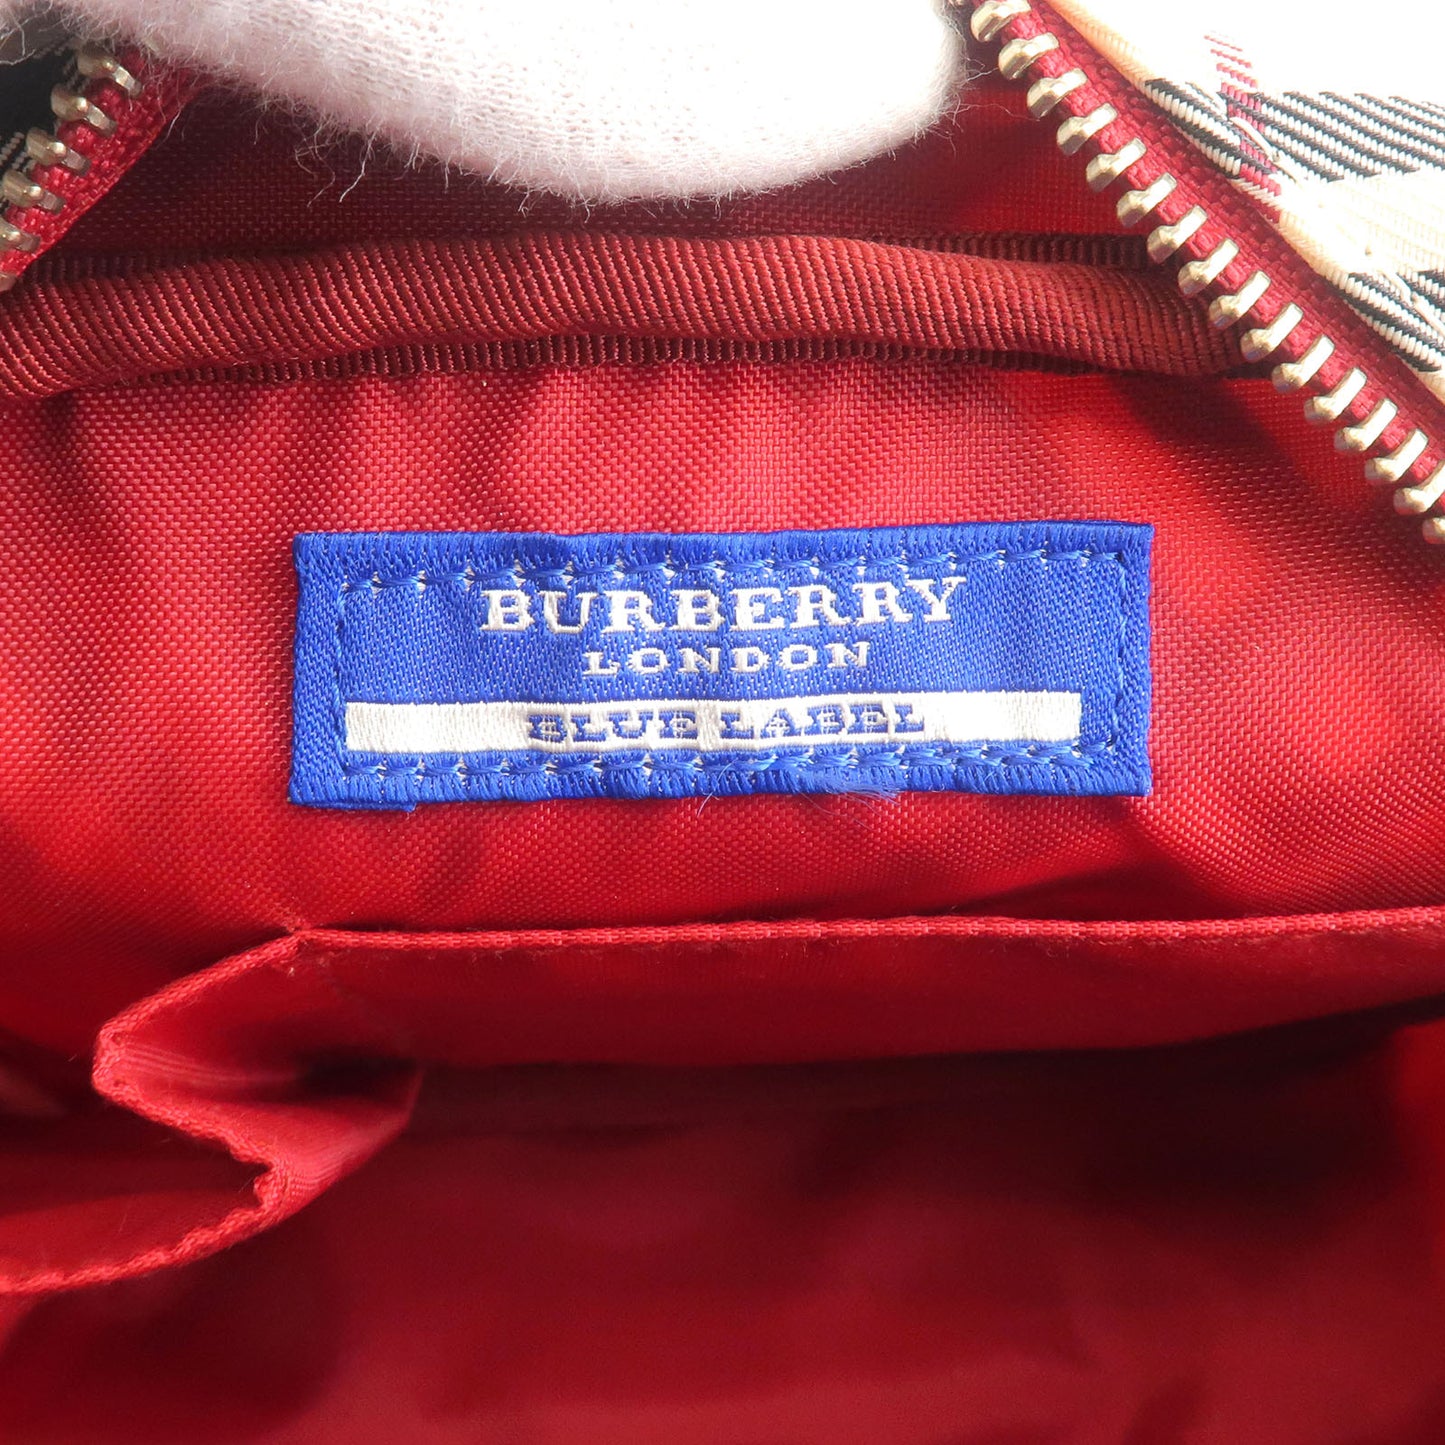 BURBERRY Blue Label Nova Plaid Nylon Canvas Leather Shoulder Bag